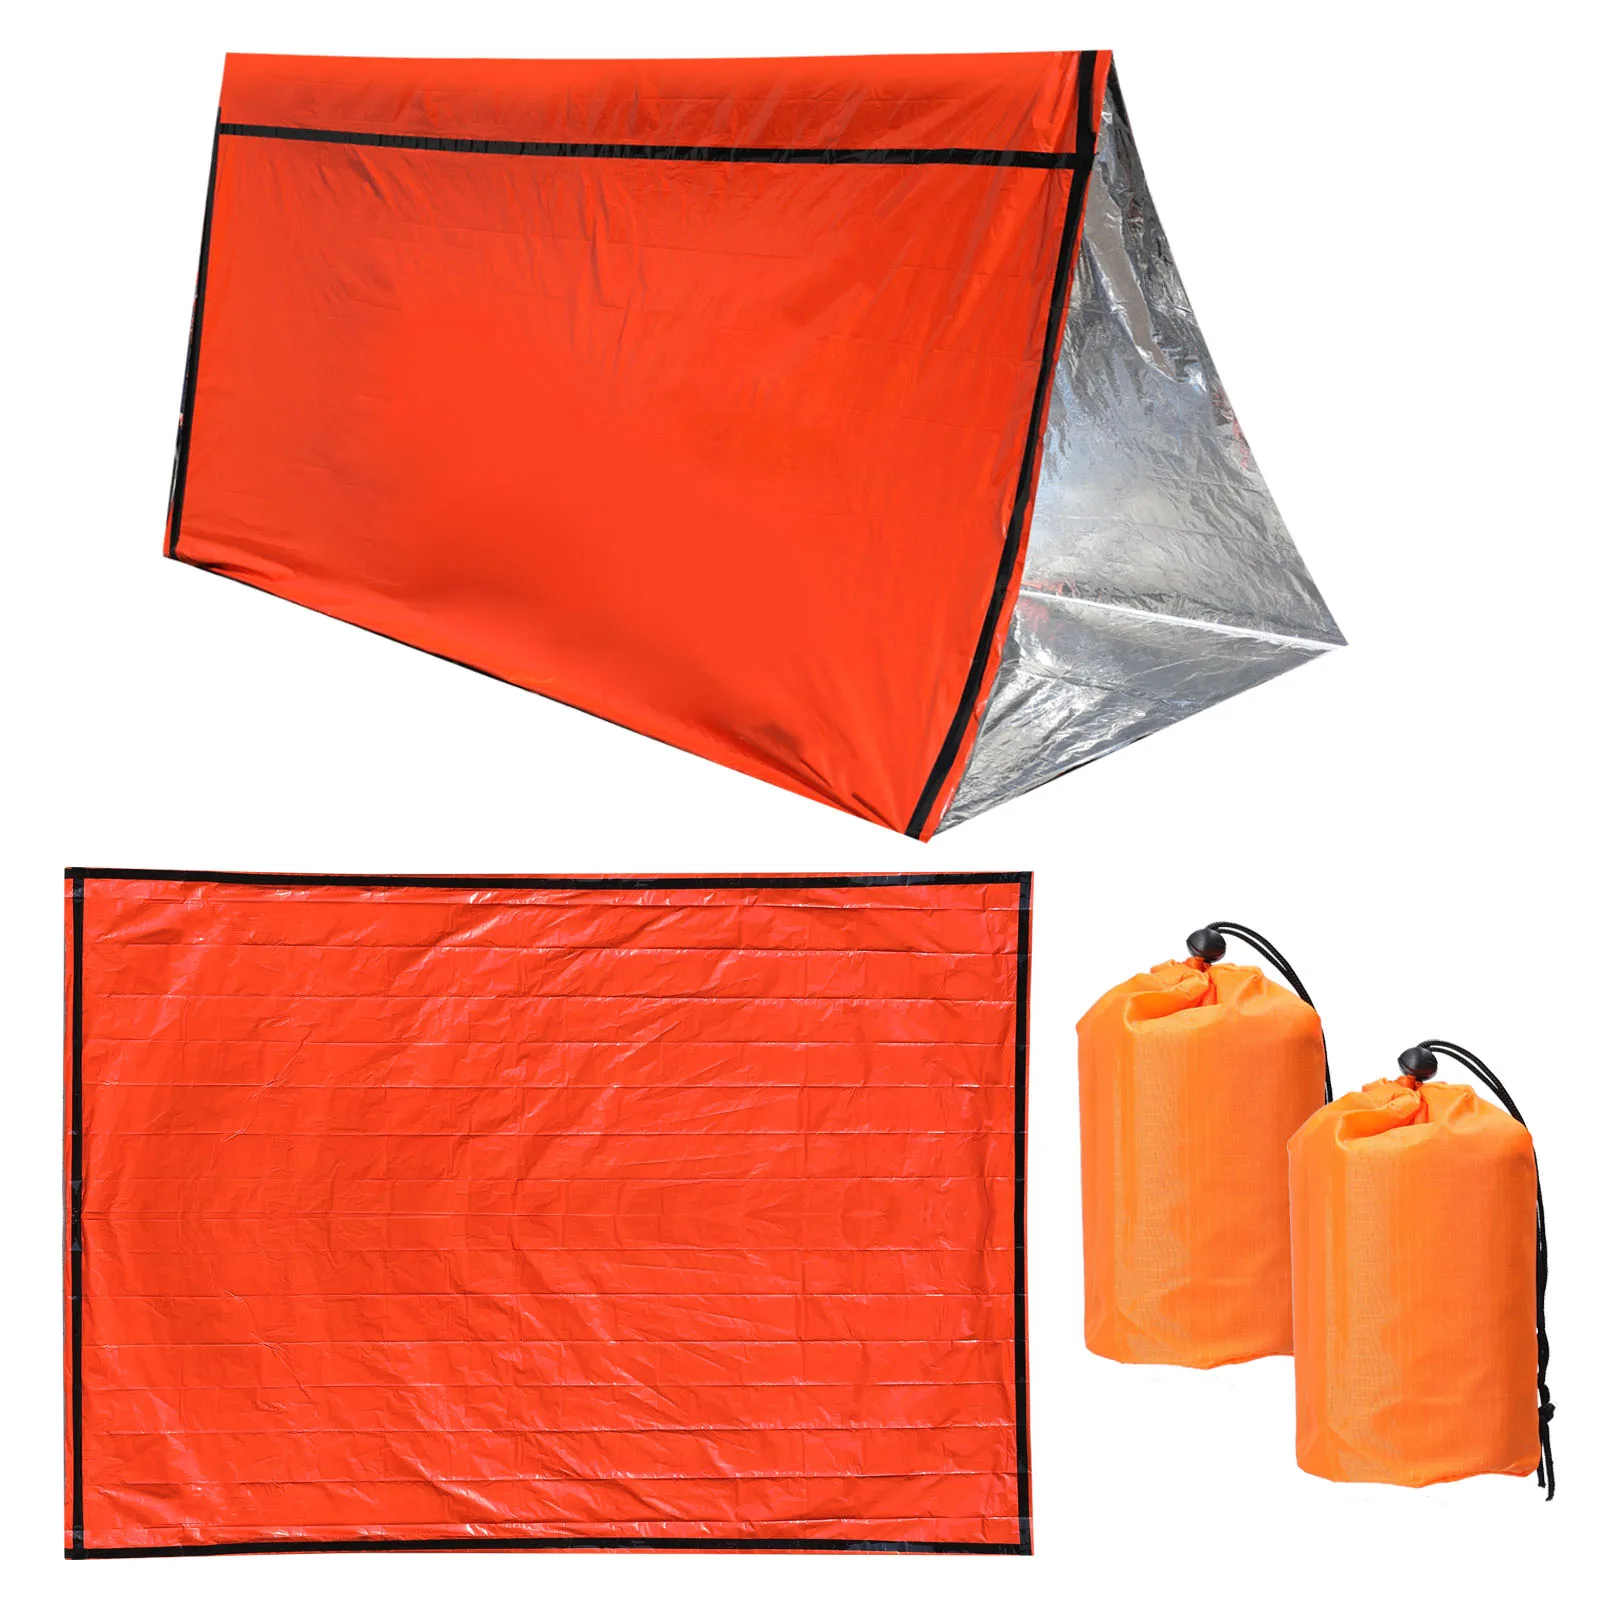 2Pack Reusable Emergency Sleeping Bag Thermal Waterproof Survival Camping Bags 